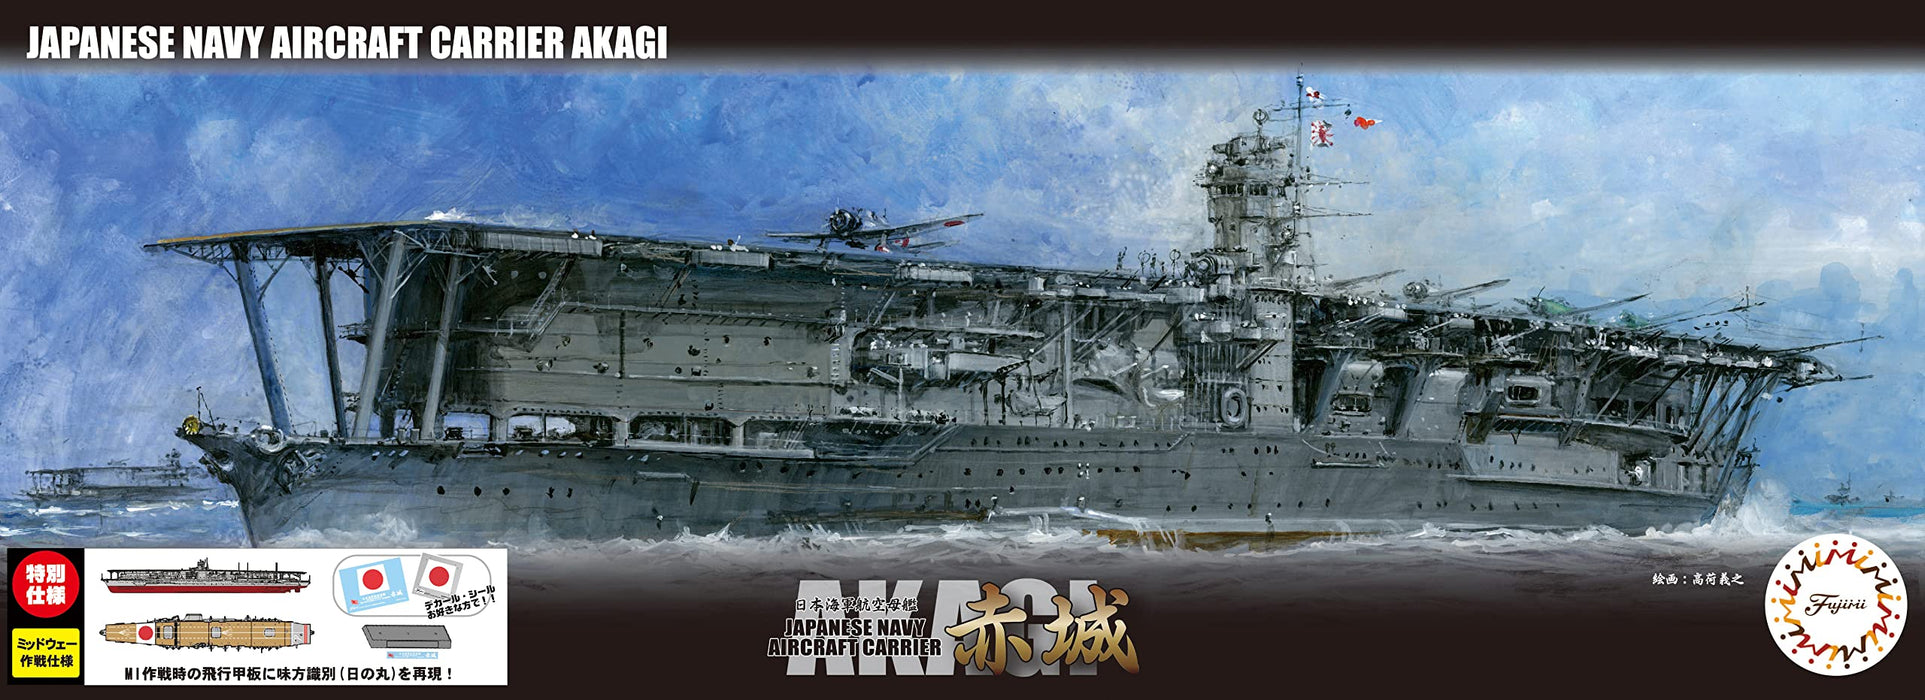 FUJIMI Fune Next 1/700 porte-avions de la marine japonaise Akagi édition spéciale bataille de Midway en 1945 modèle en plastique